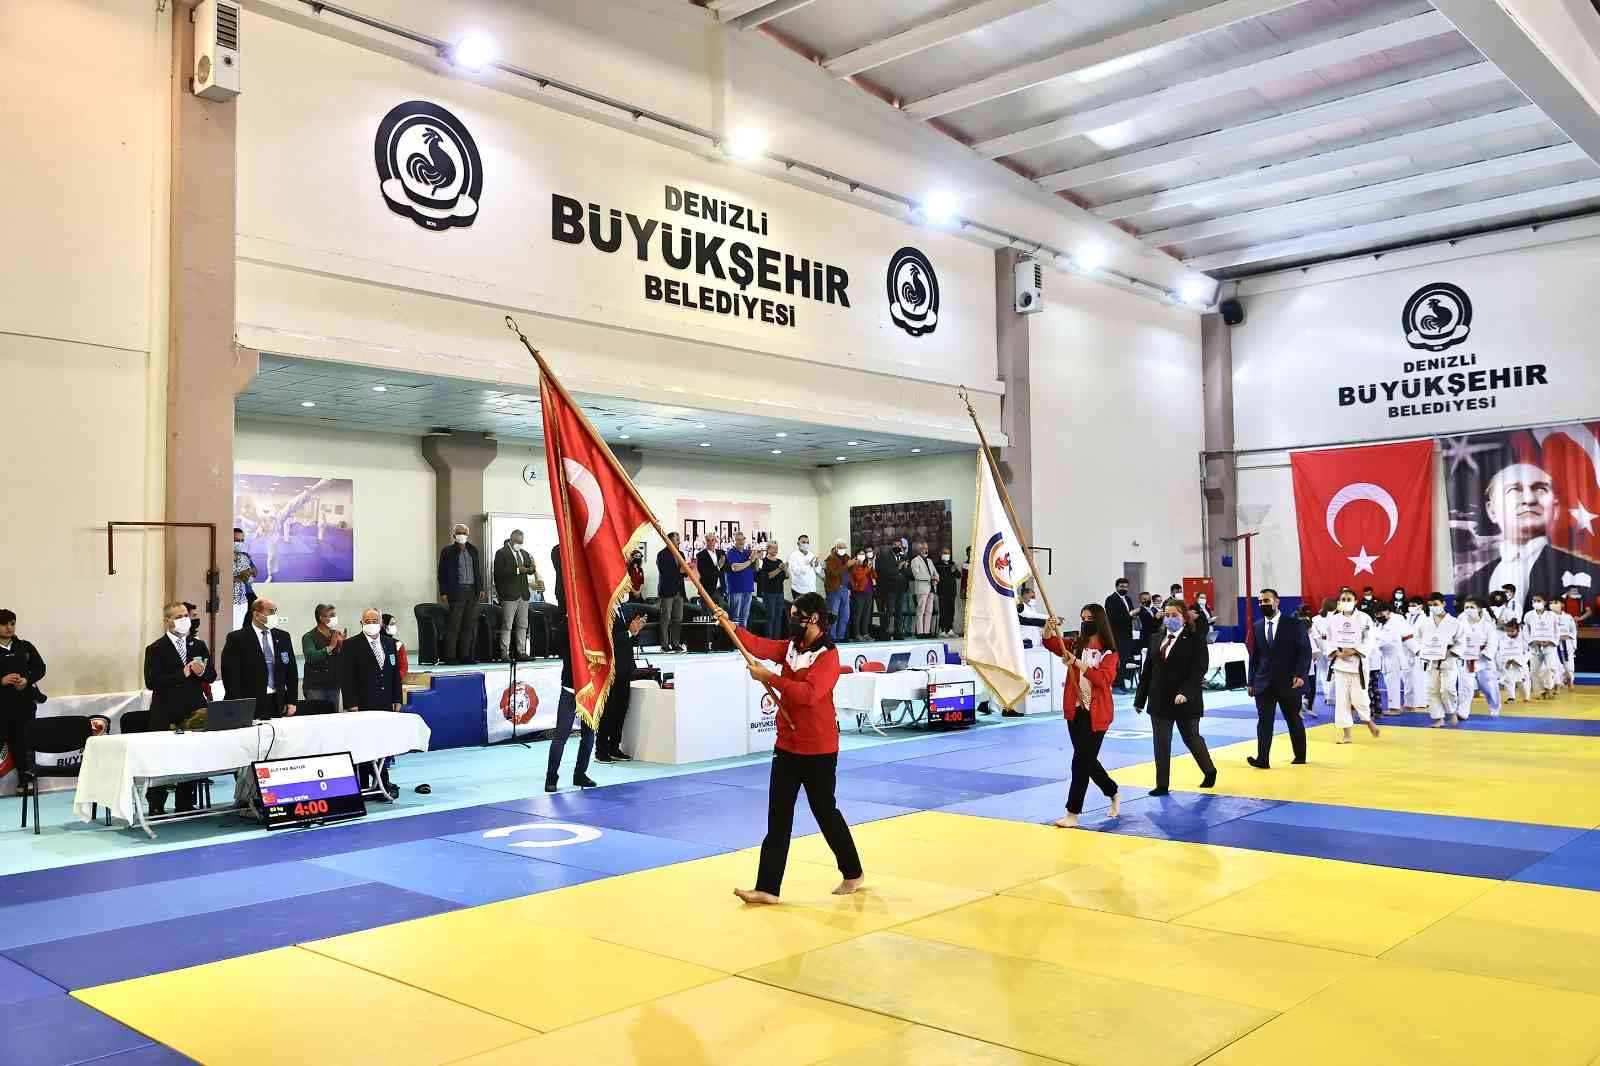 Cumhuriyet Kupası Judo Turnuvası 4 ülkeden 176 sporcuyu bir araya getirdi #denizli